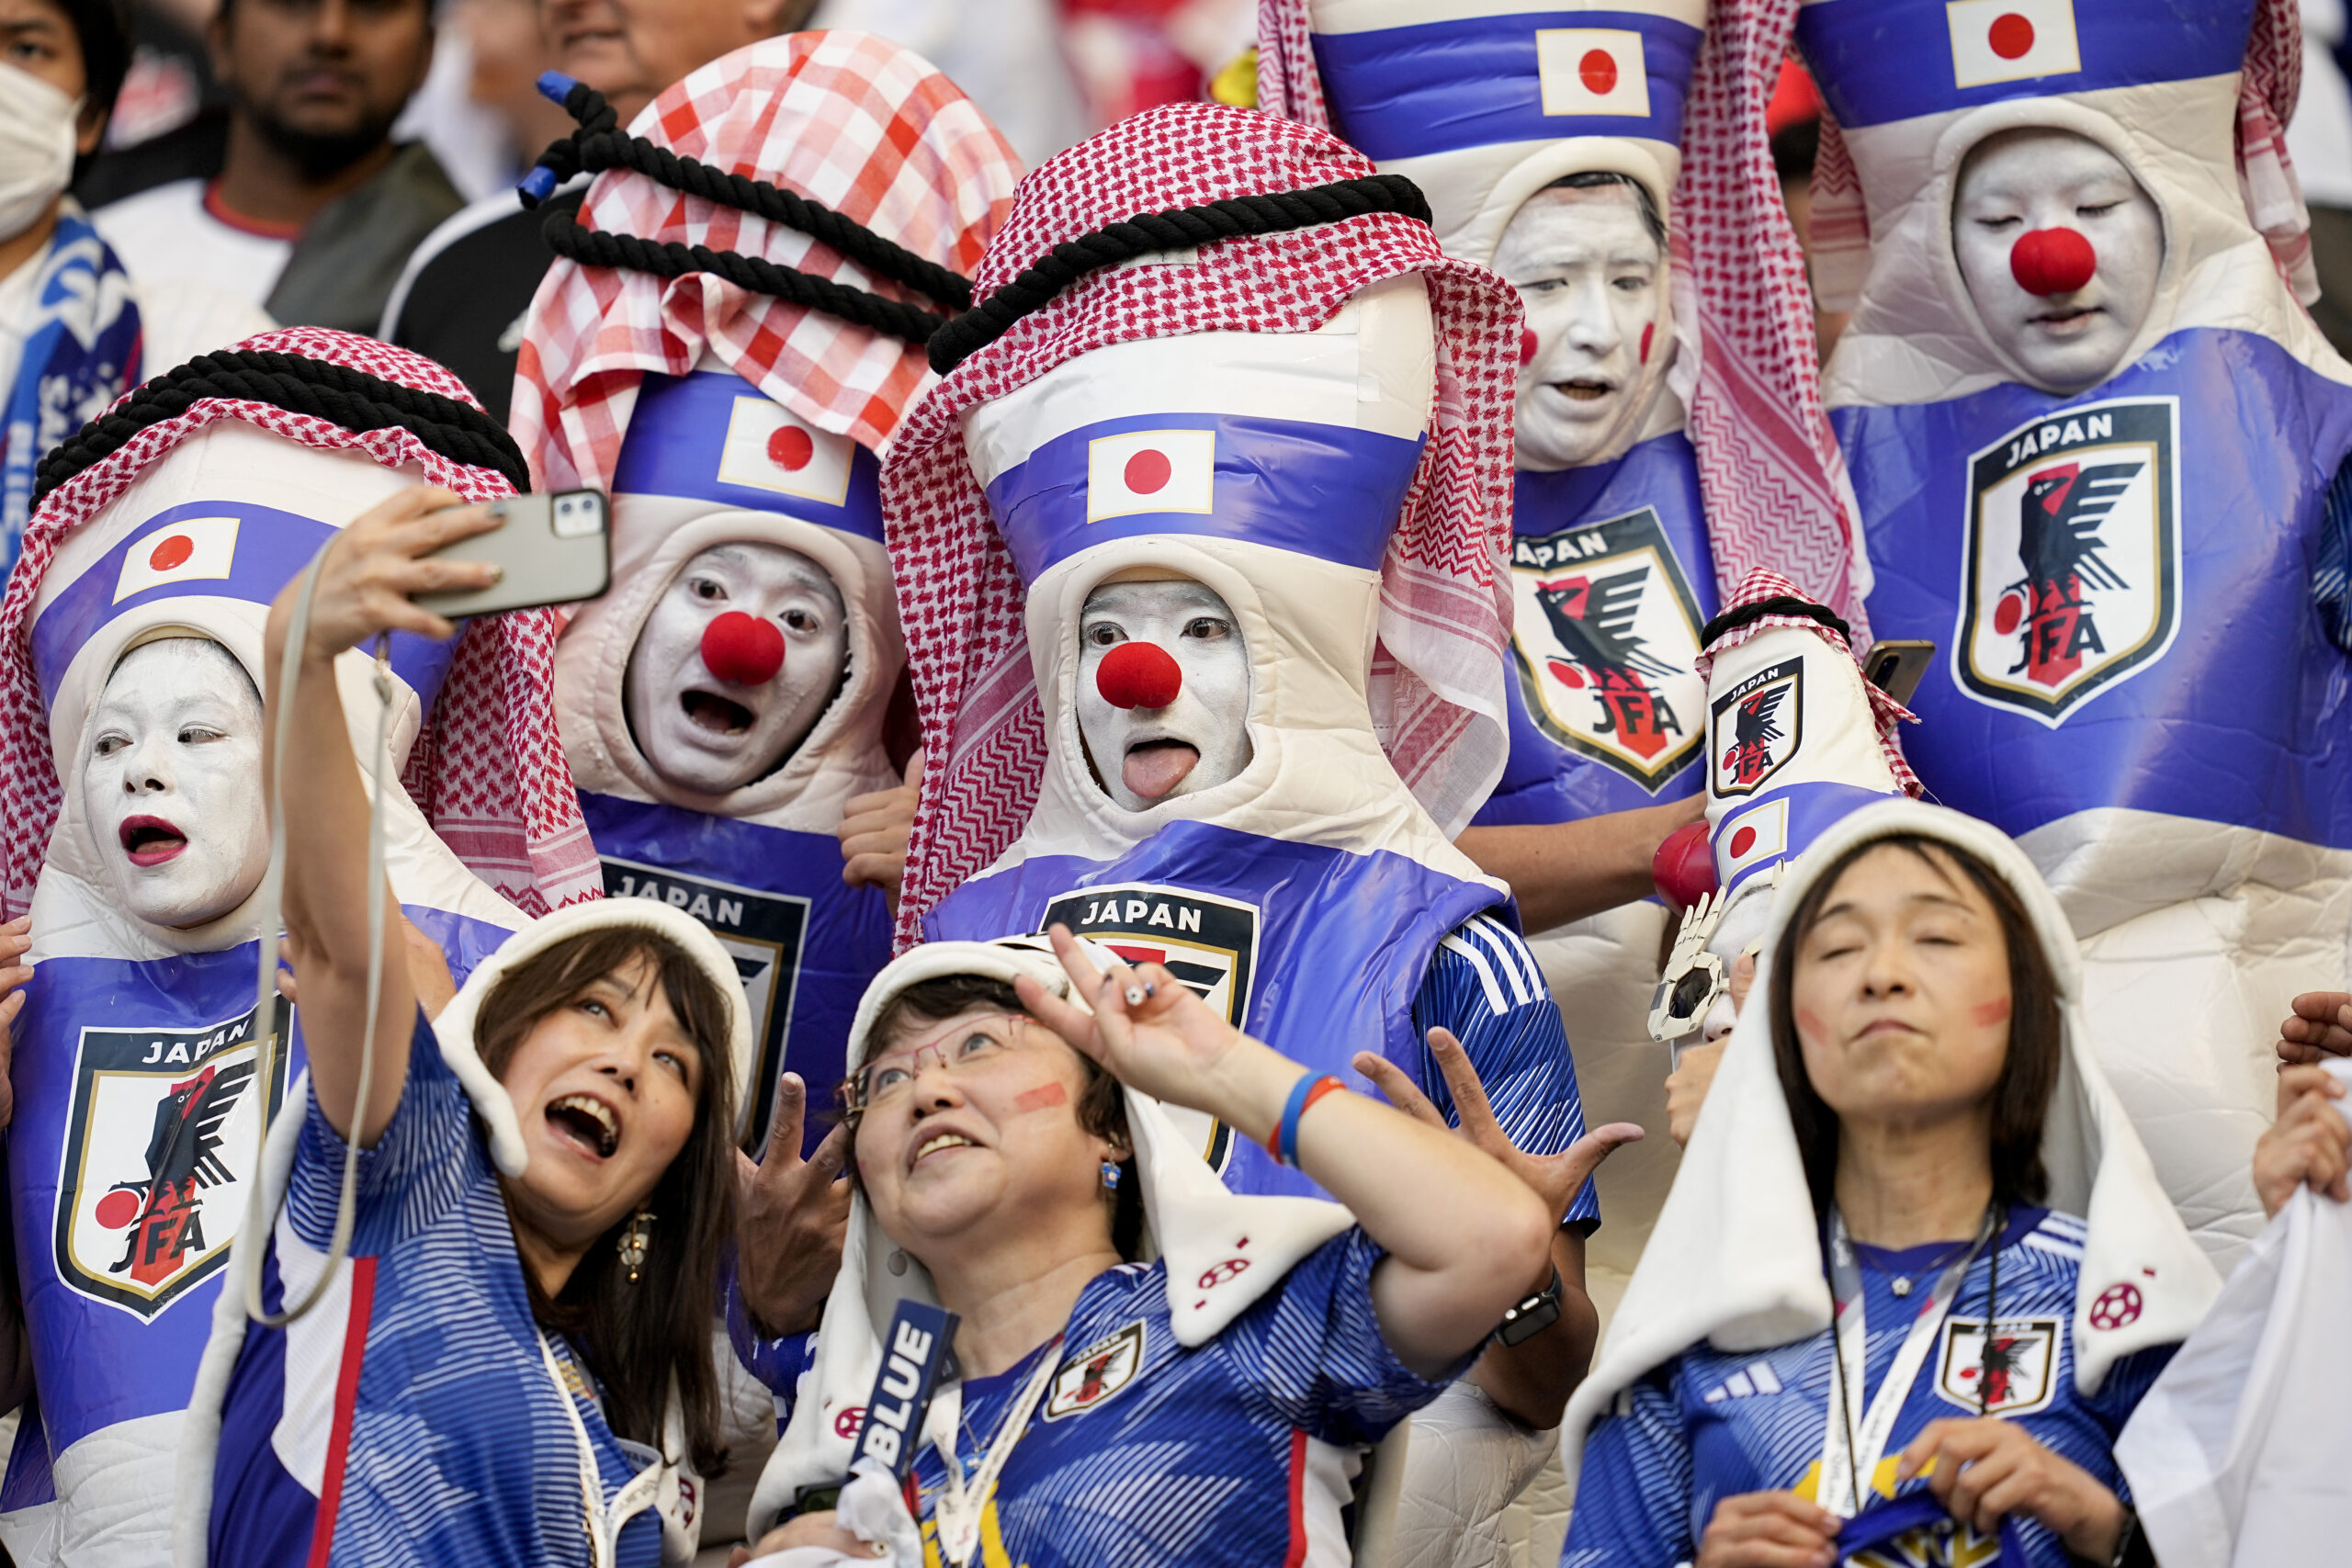 جماهير اليابان في كاس العالم 2022 في قطر يلتقطون السيلفي